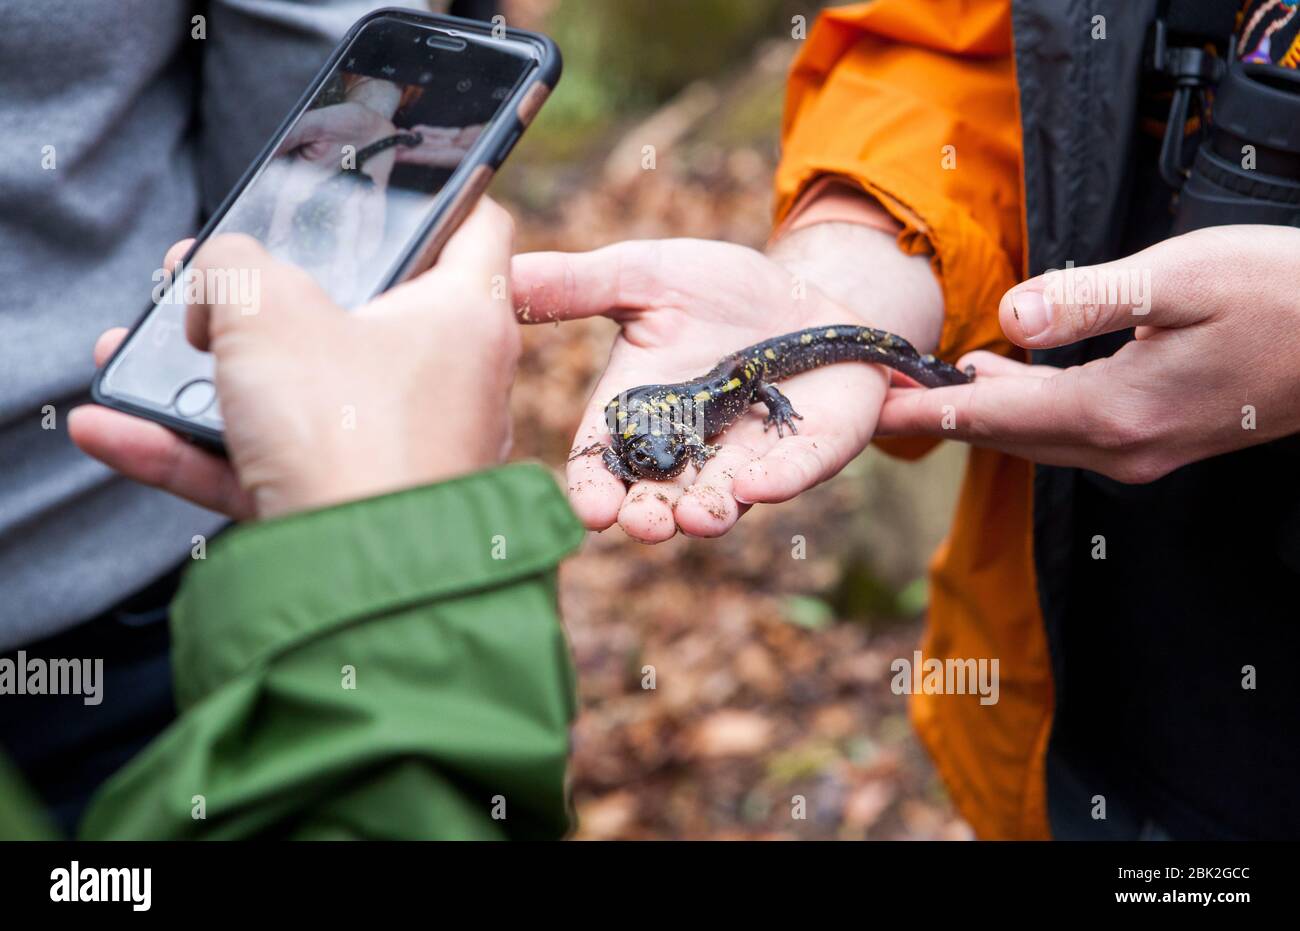 Una persona tiene un salamander maculatum maculatum macchiato (Ambystoma maculatum) mentre un'altra persona lo fotografa durante una passeggiata nella natura in una foresta in Ithaca, NY, Stati Uniti Foto Stock